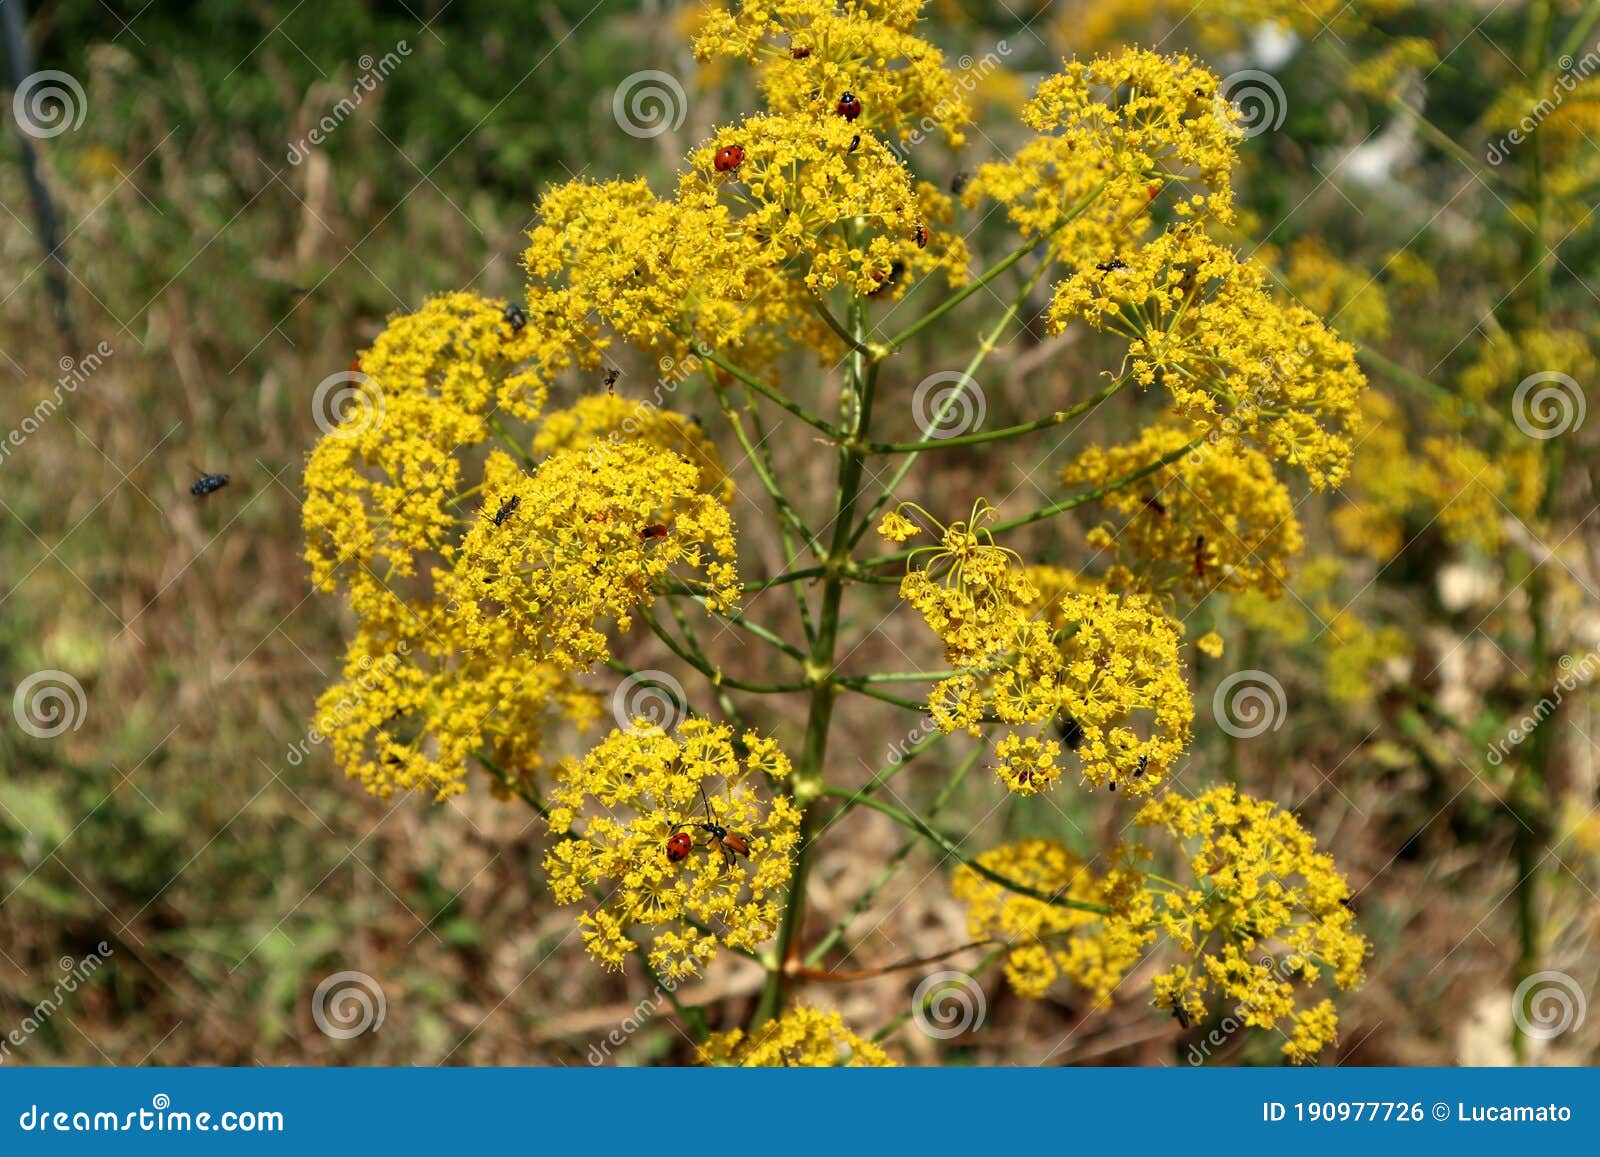 coccinelle su arbusto di fiori gialli